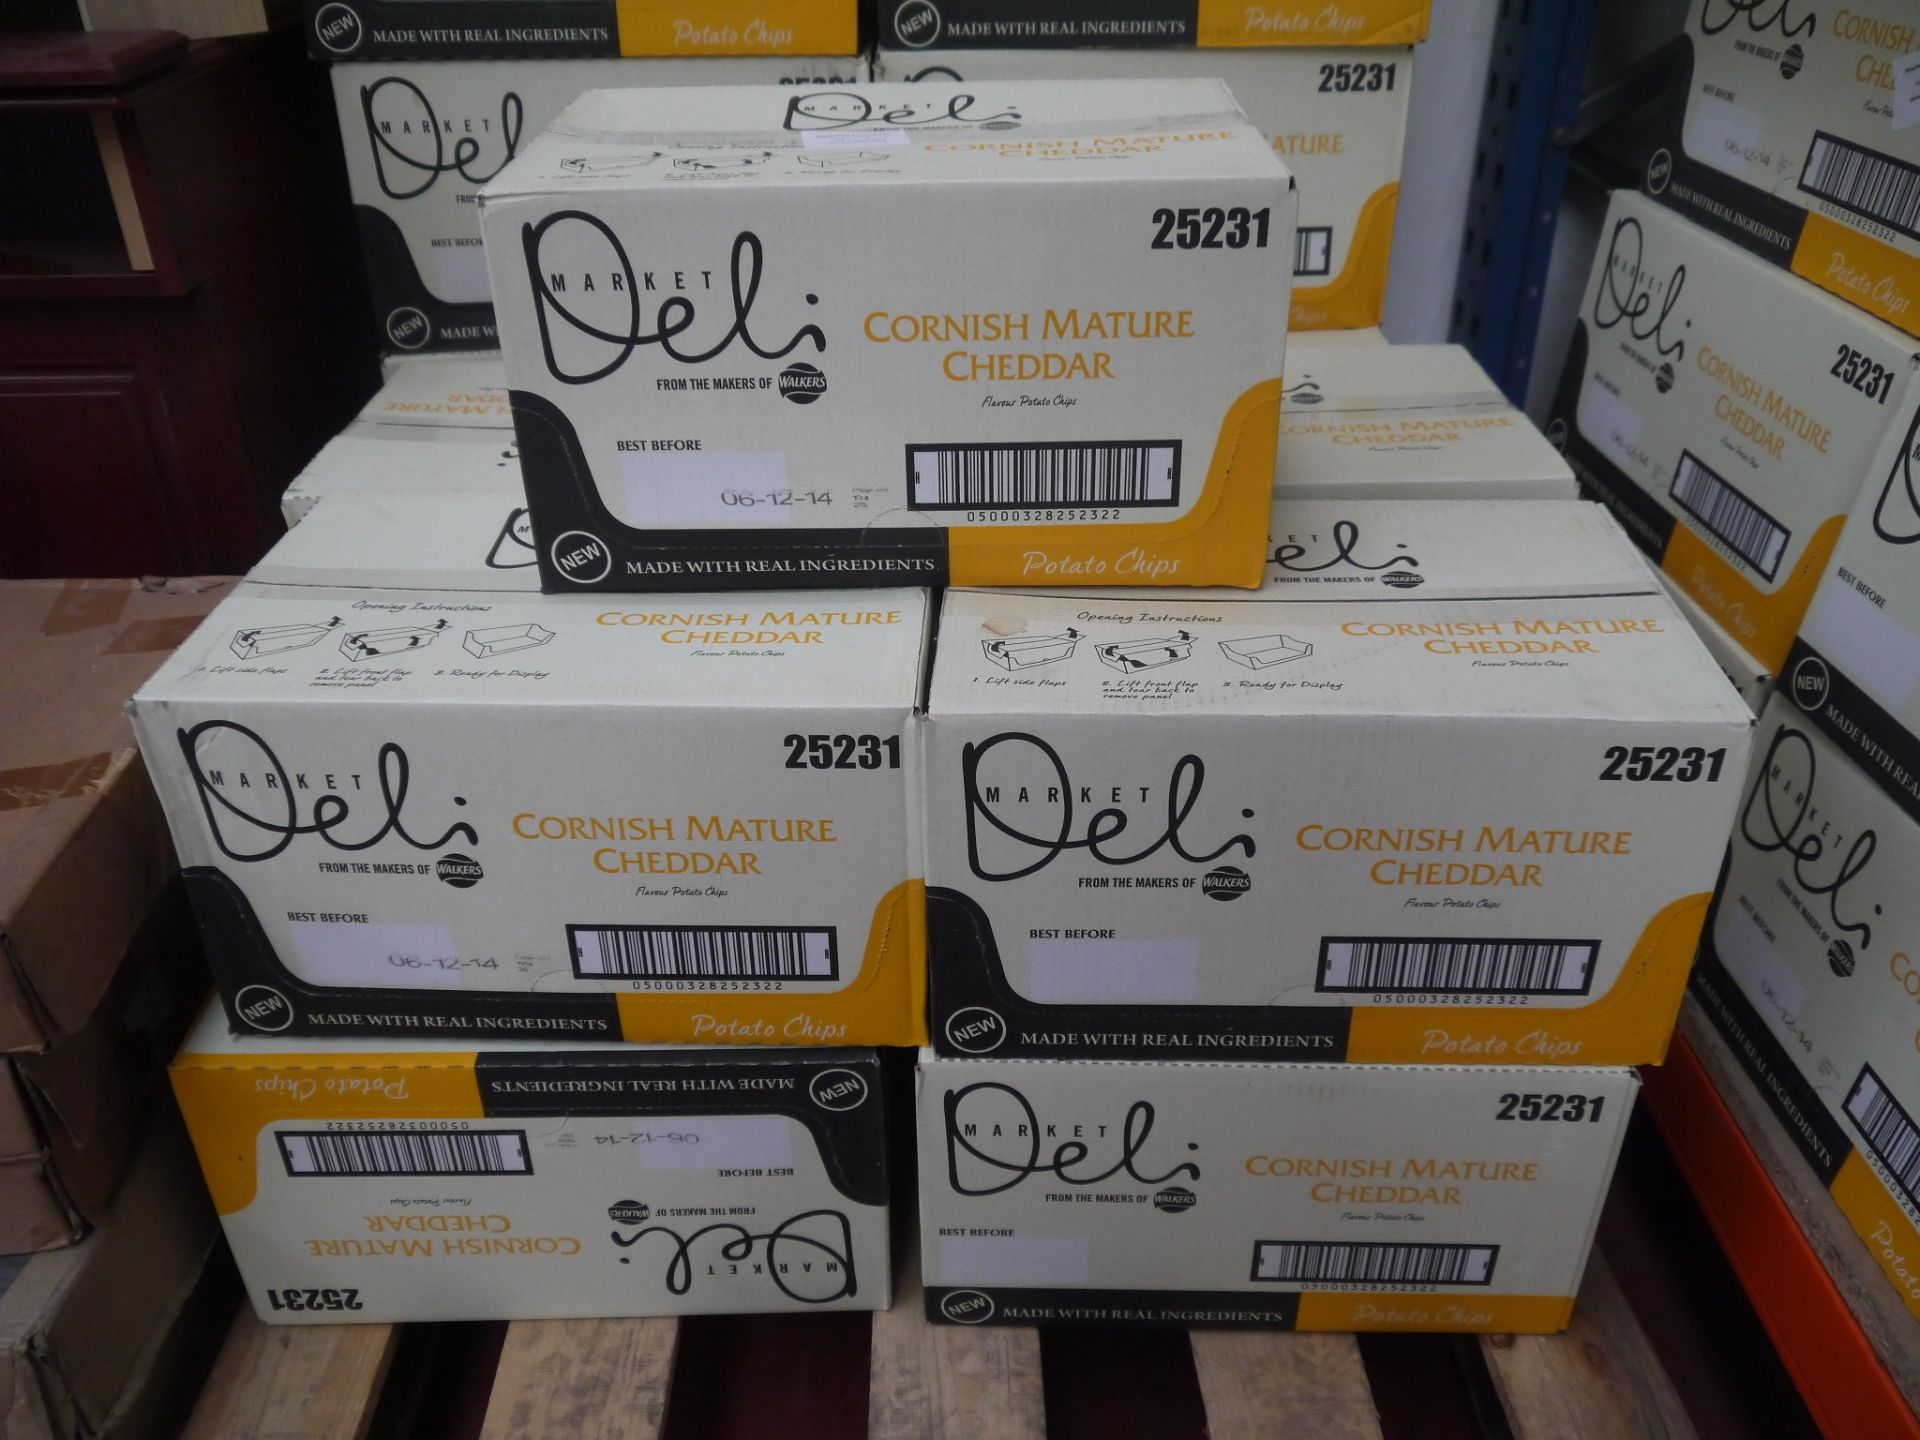 6x Box of 9, 165 g Walkers Deli Balsamic Vinegar Crisps. BEST BEFORE 06/12/2014